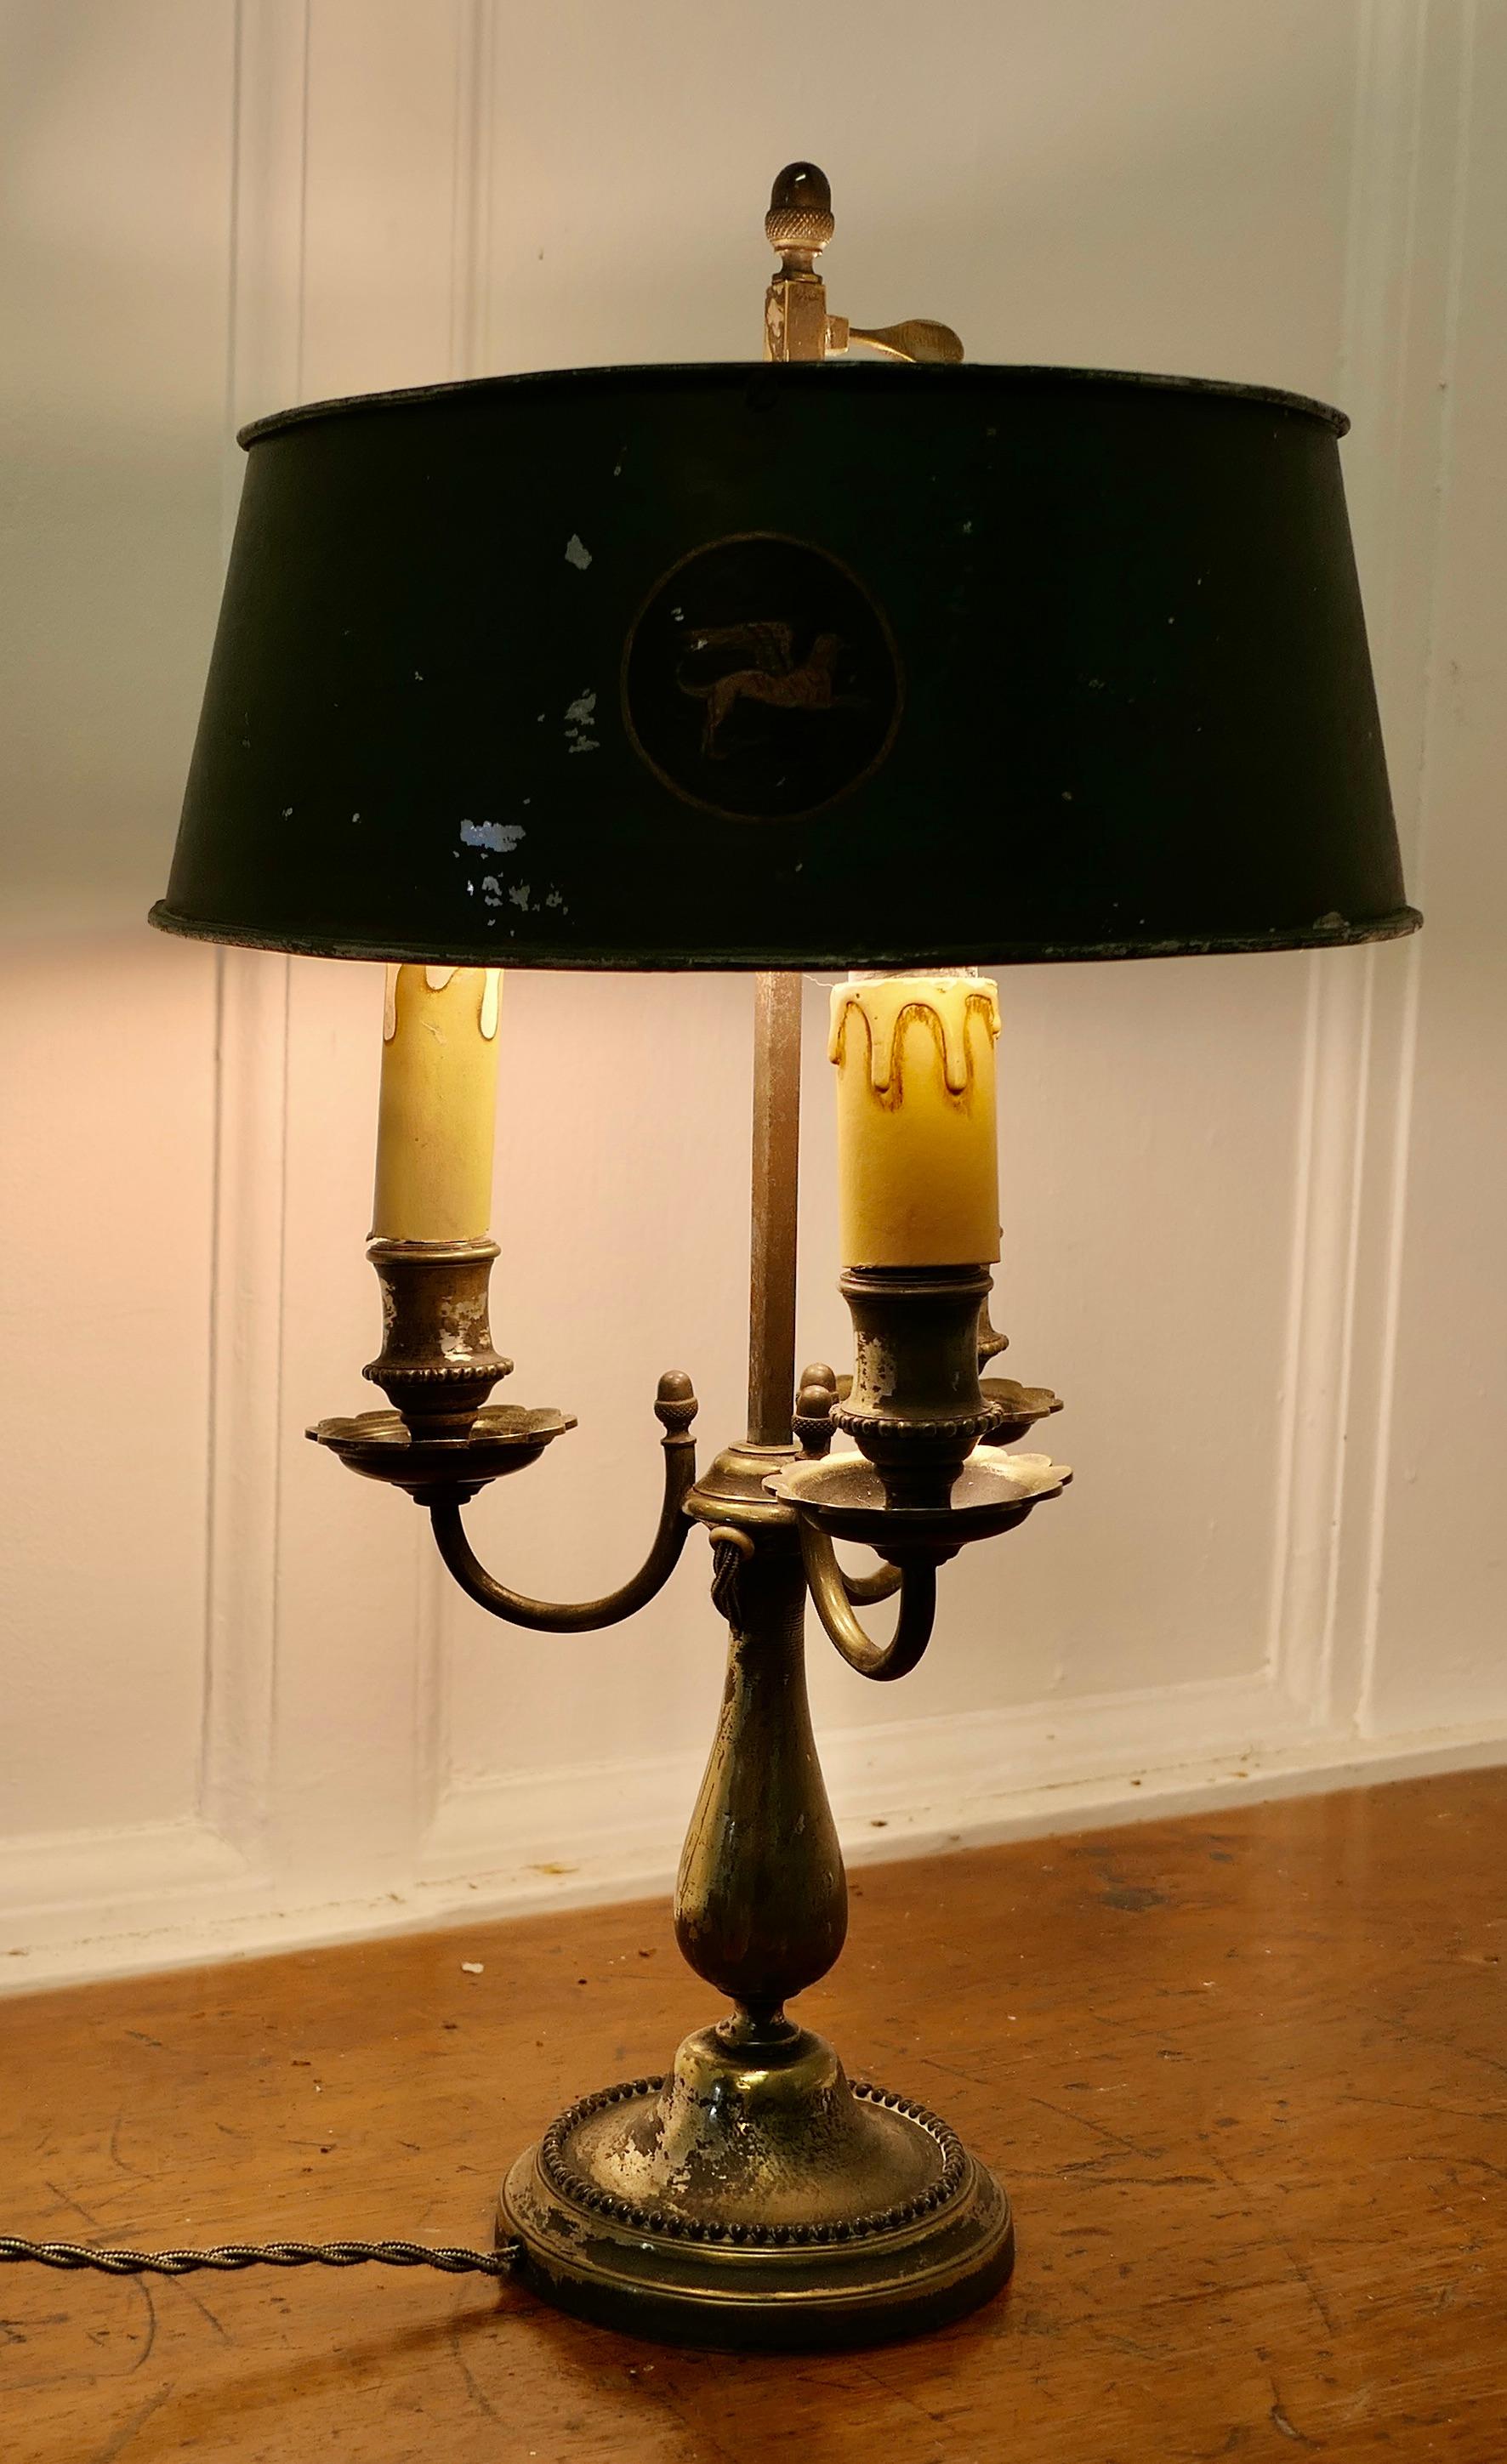 Dreifach versilberte französische Bouillotte-Schreibtischlampe

Ein schönes Stück, eine alte versilberte dreifache Leuchte, die mit dem originalen Toleware-Schirm mit mythischen Tieren verziert ist 
Die Lampe ist alles funktioniert und das Silber